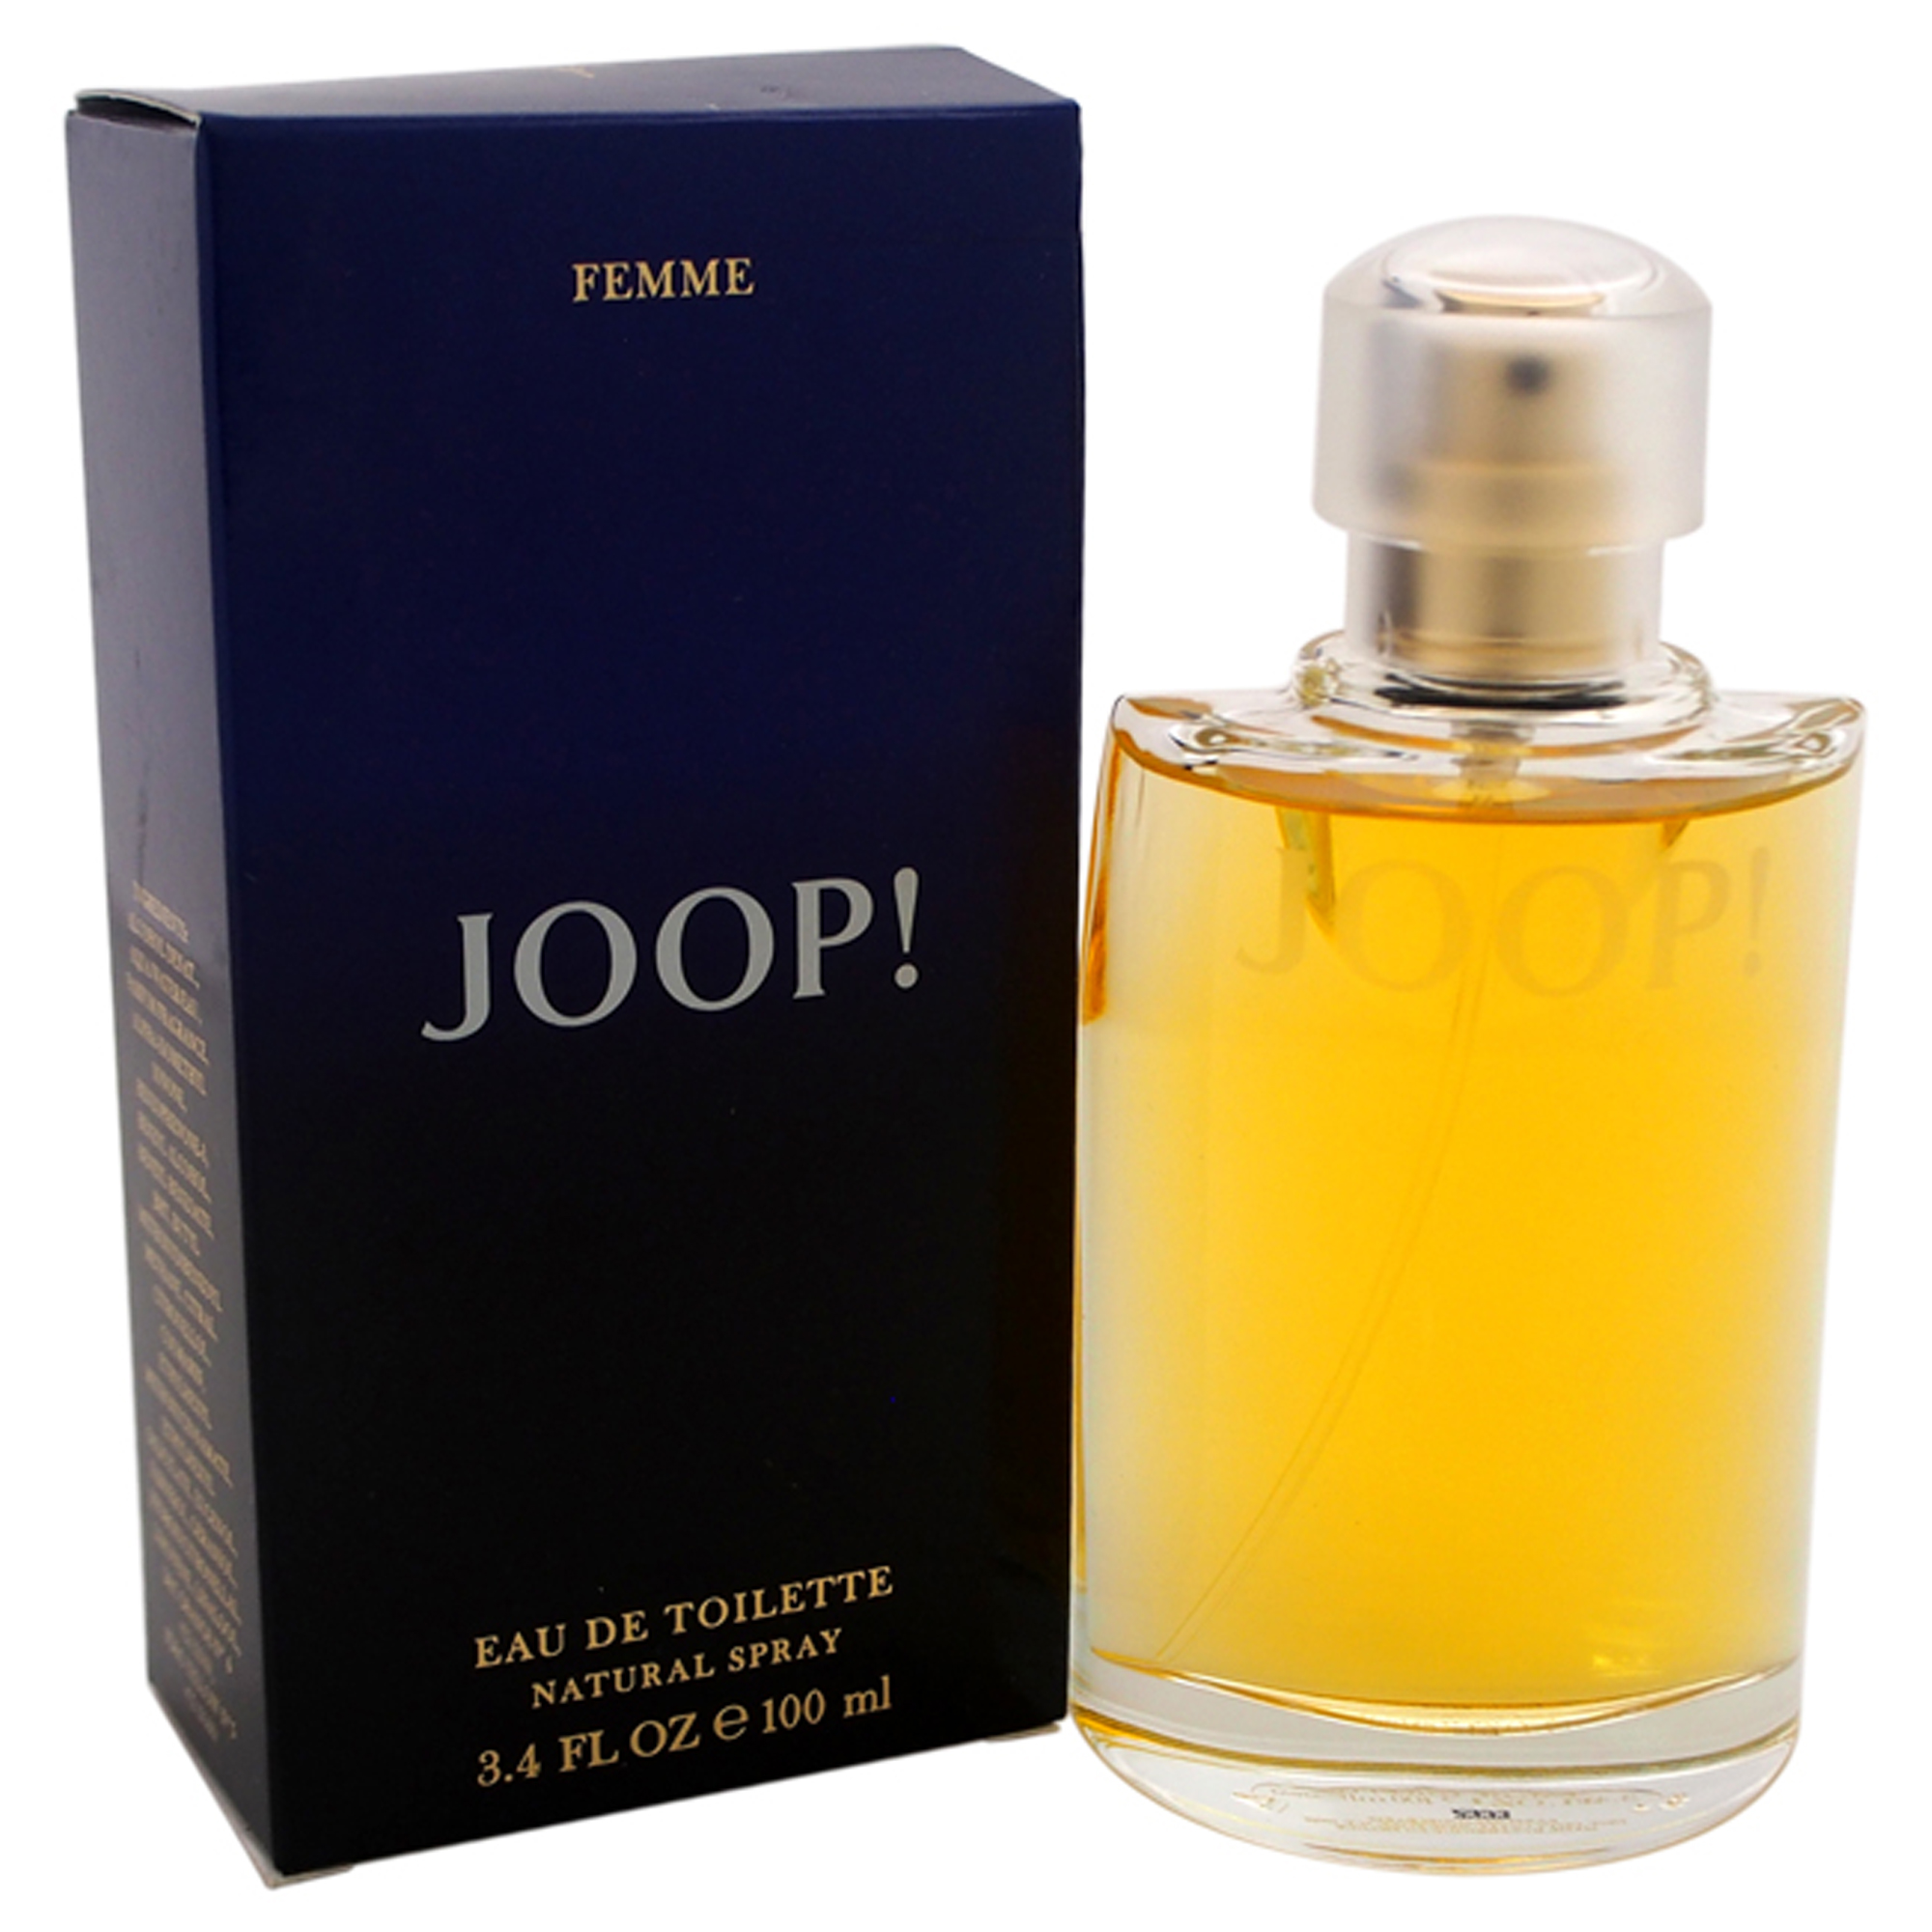 Joop by Joop for Women - 3.4 oz EDT Spray